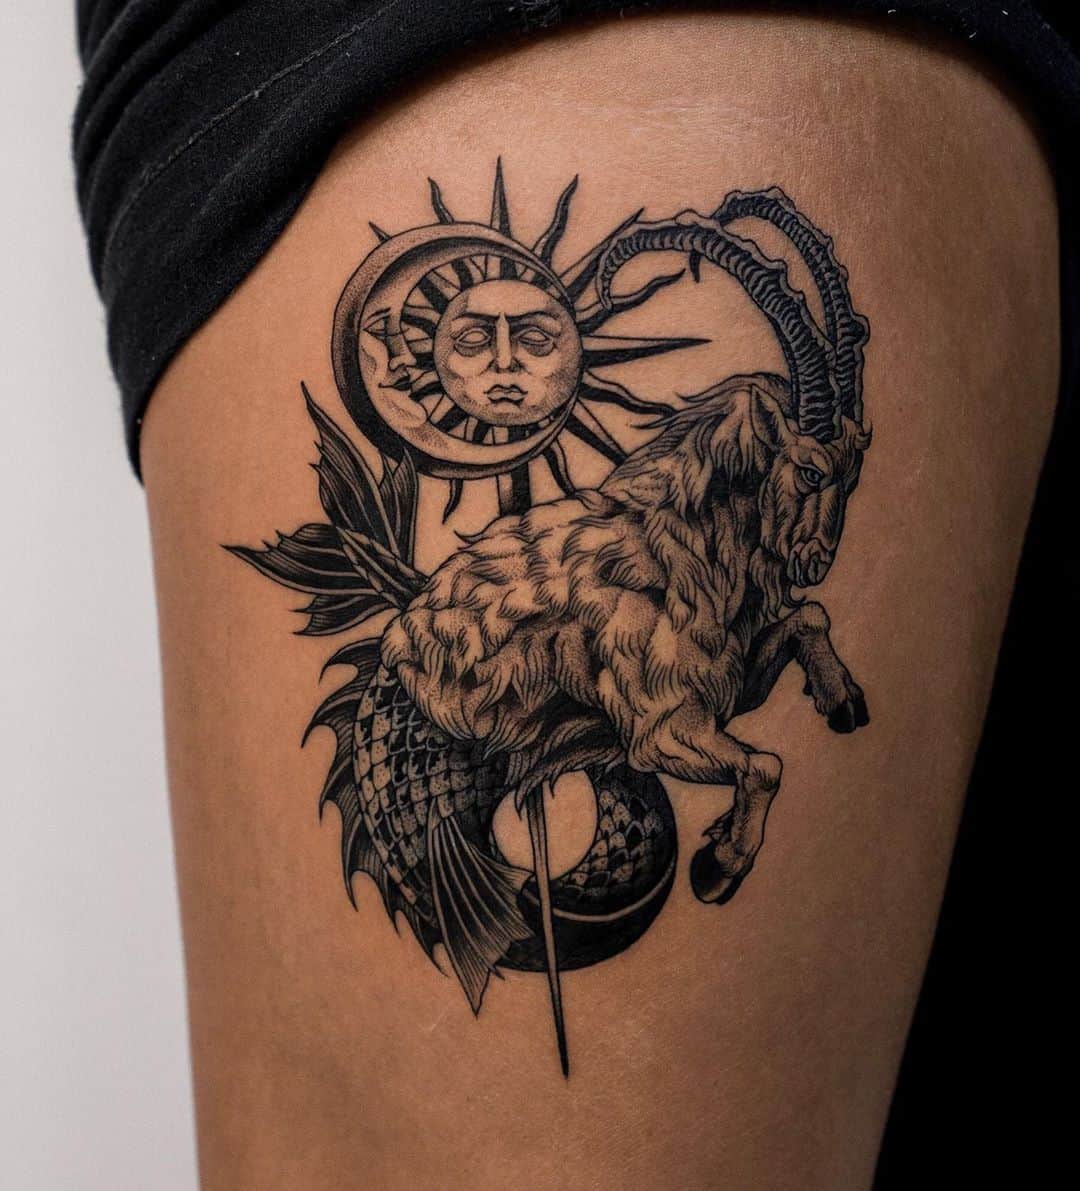 Capricorn tattoo by Amanda Piejak - Tattoogrid.net